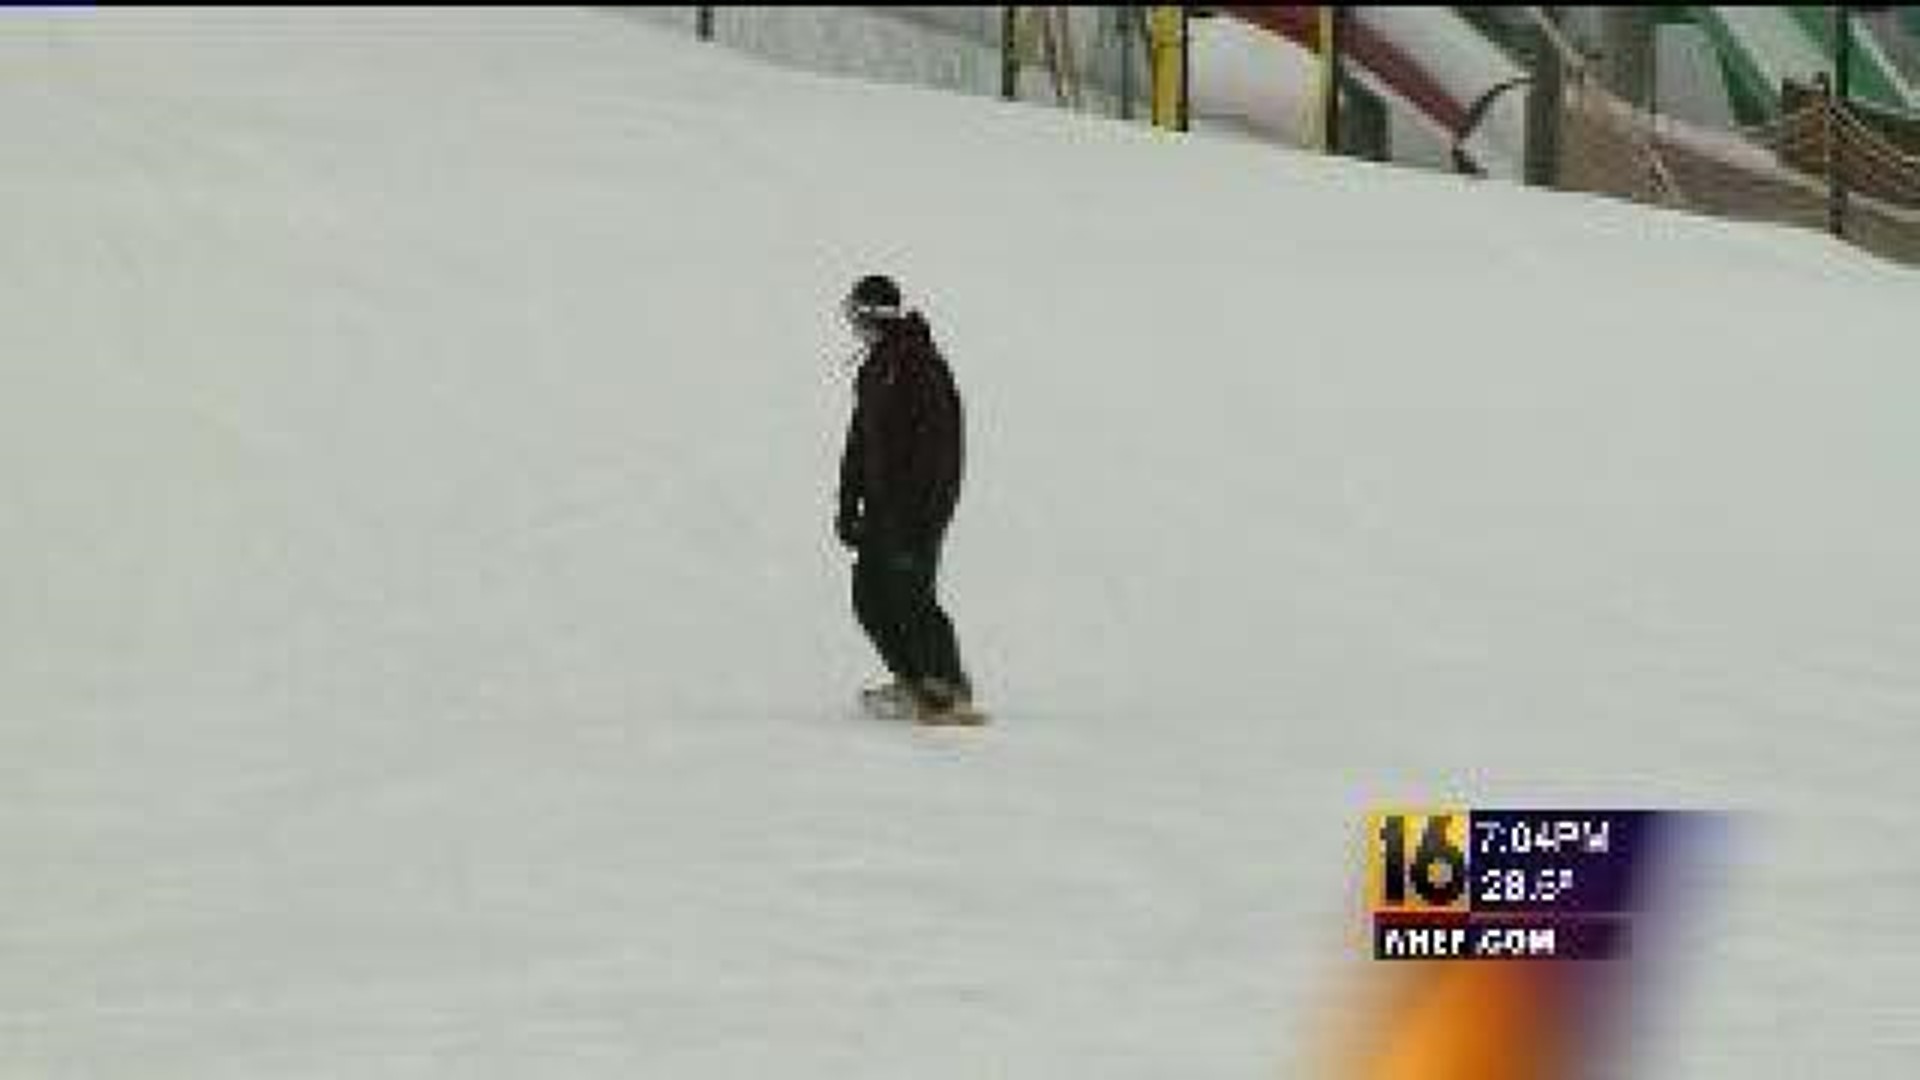 Recent Snow Stretches Ski Season